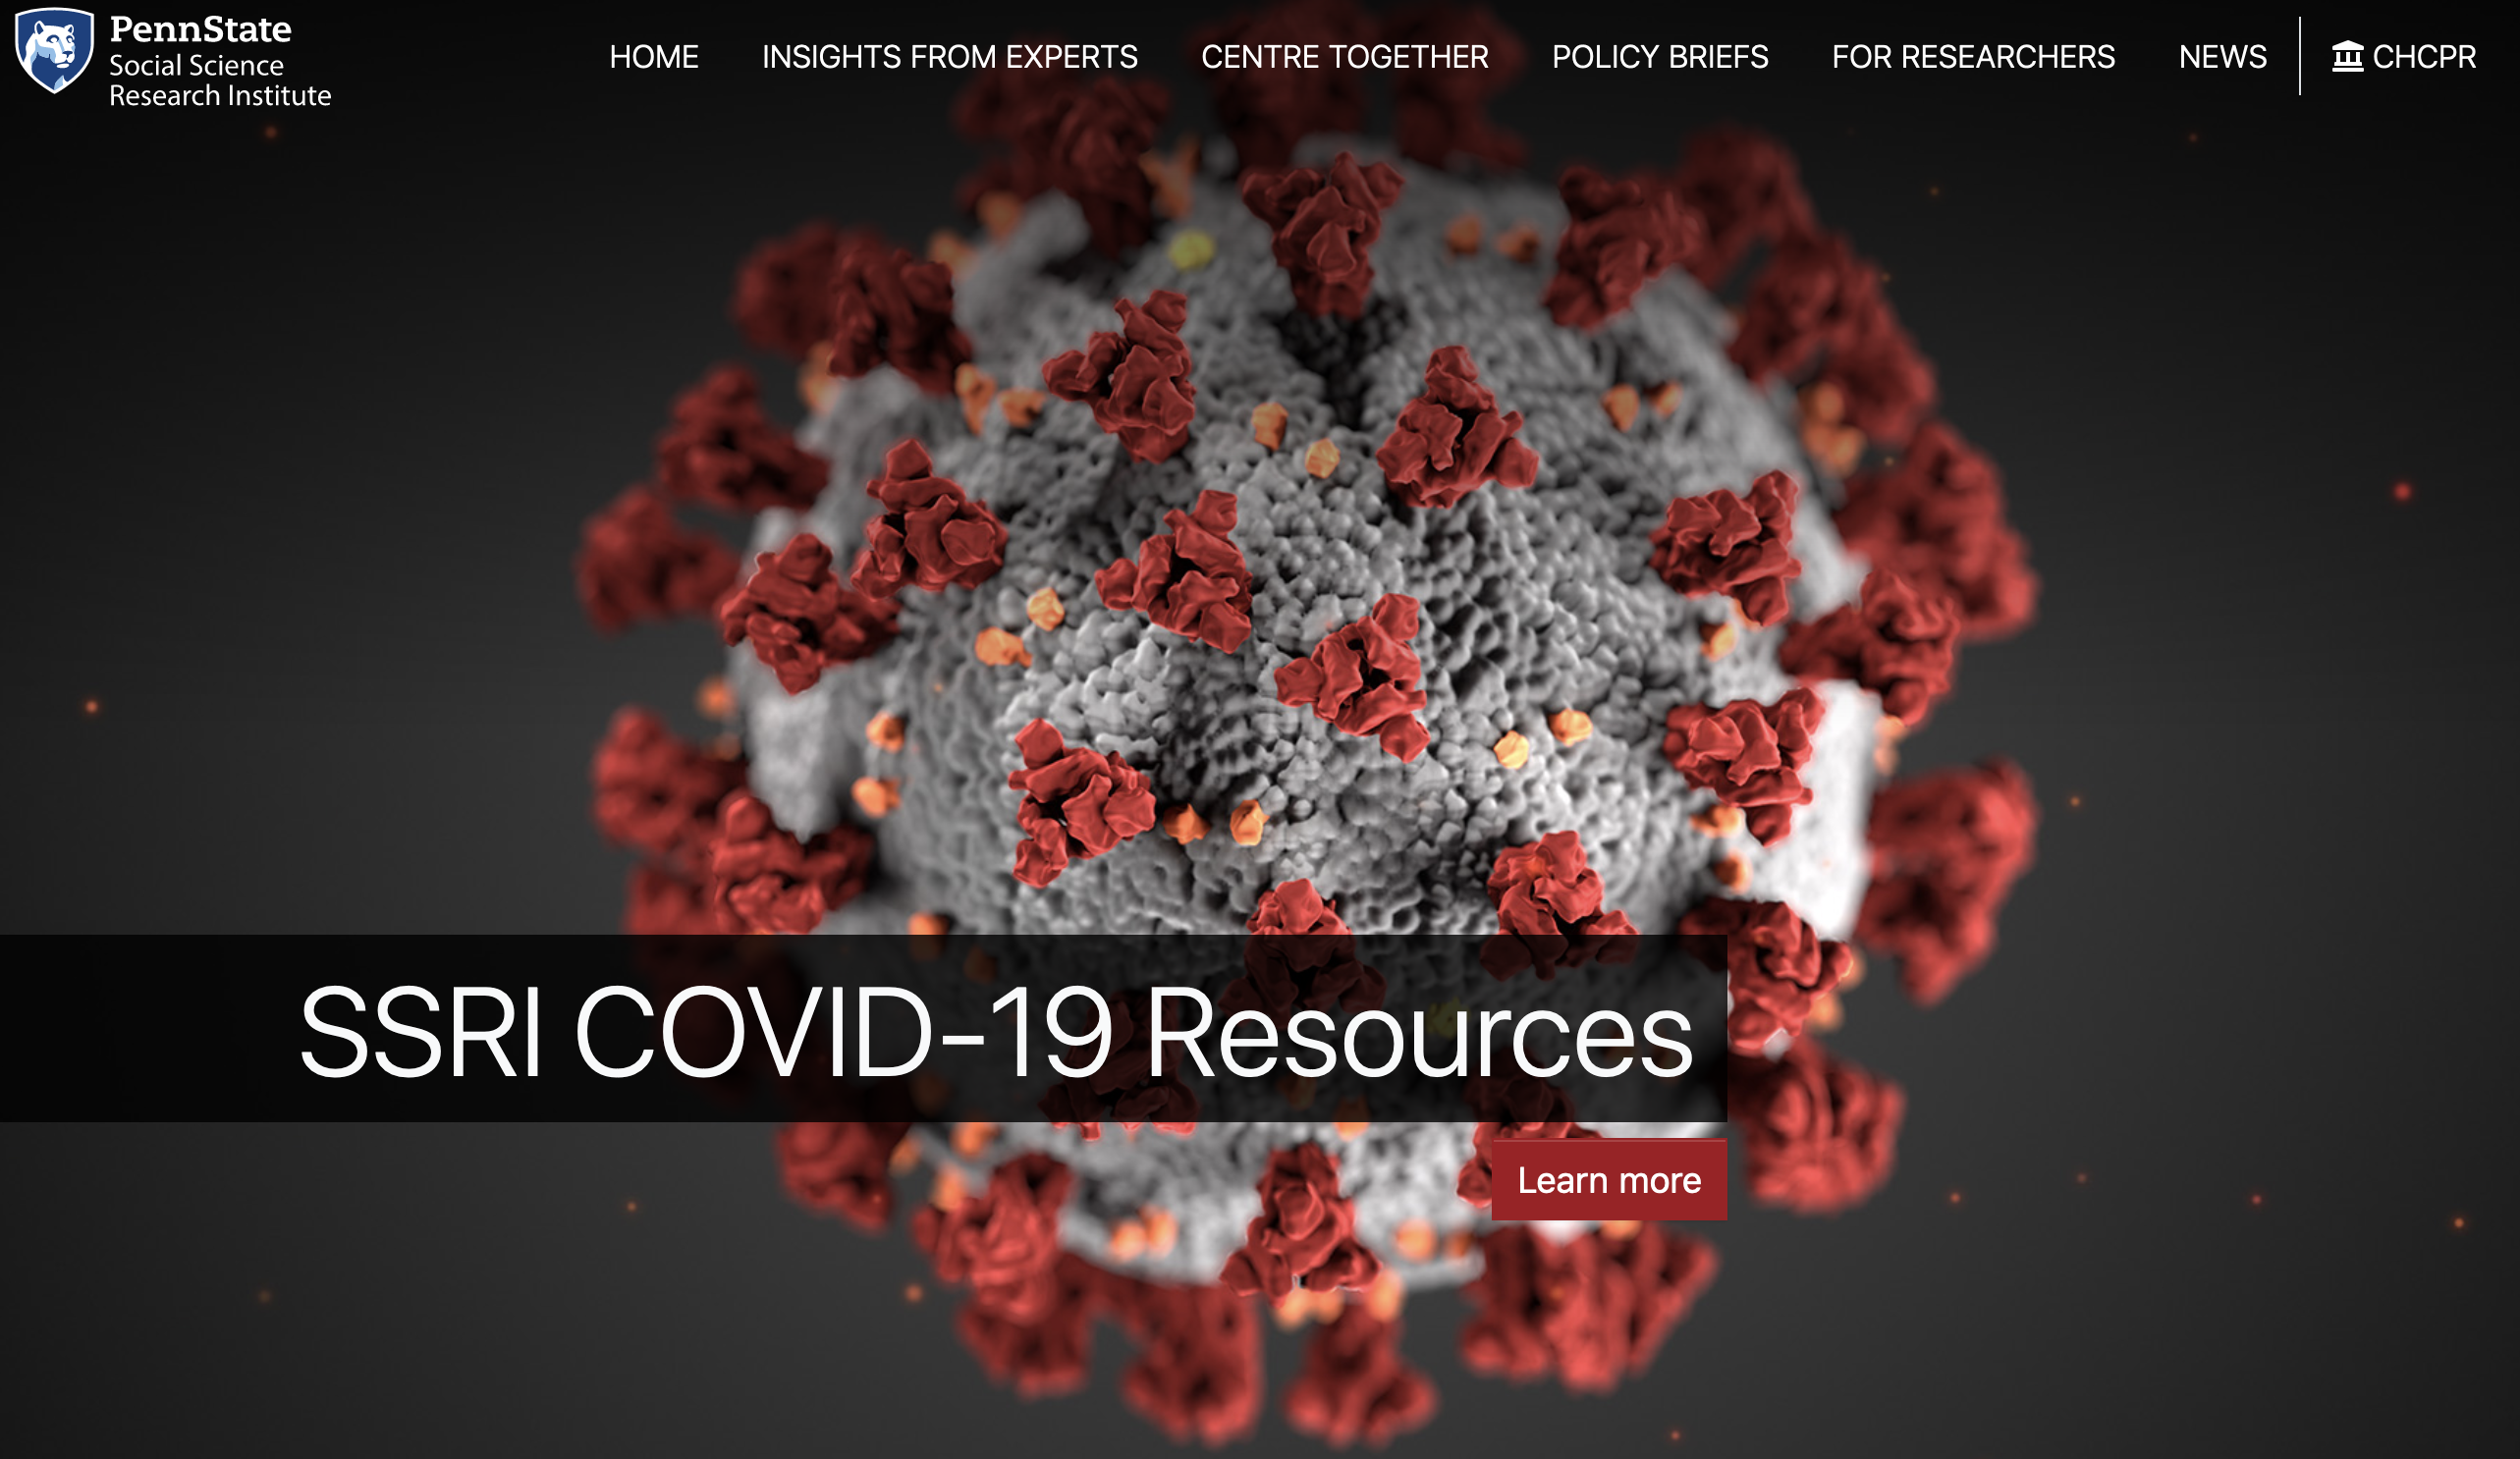 SSRI COVID-19 home page